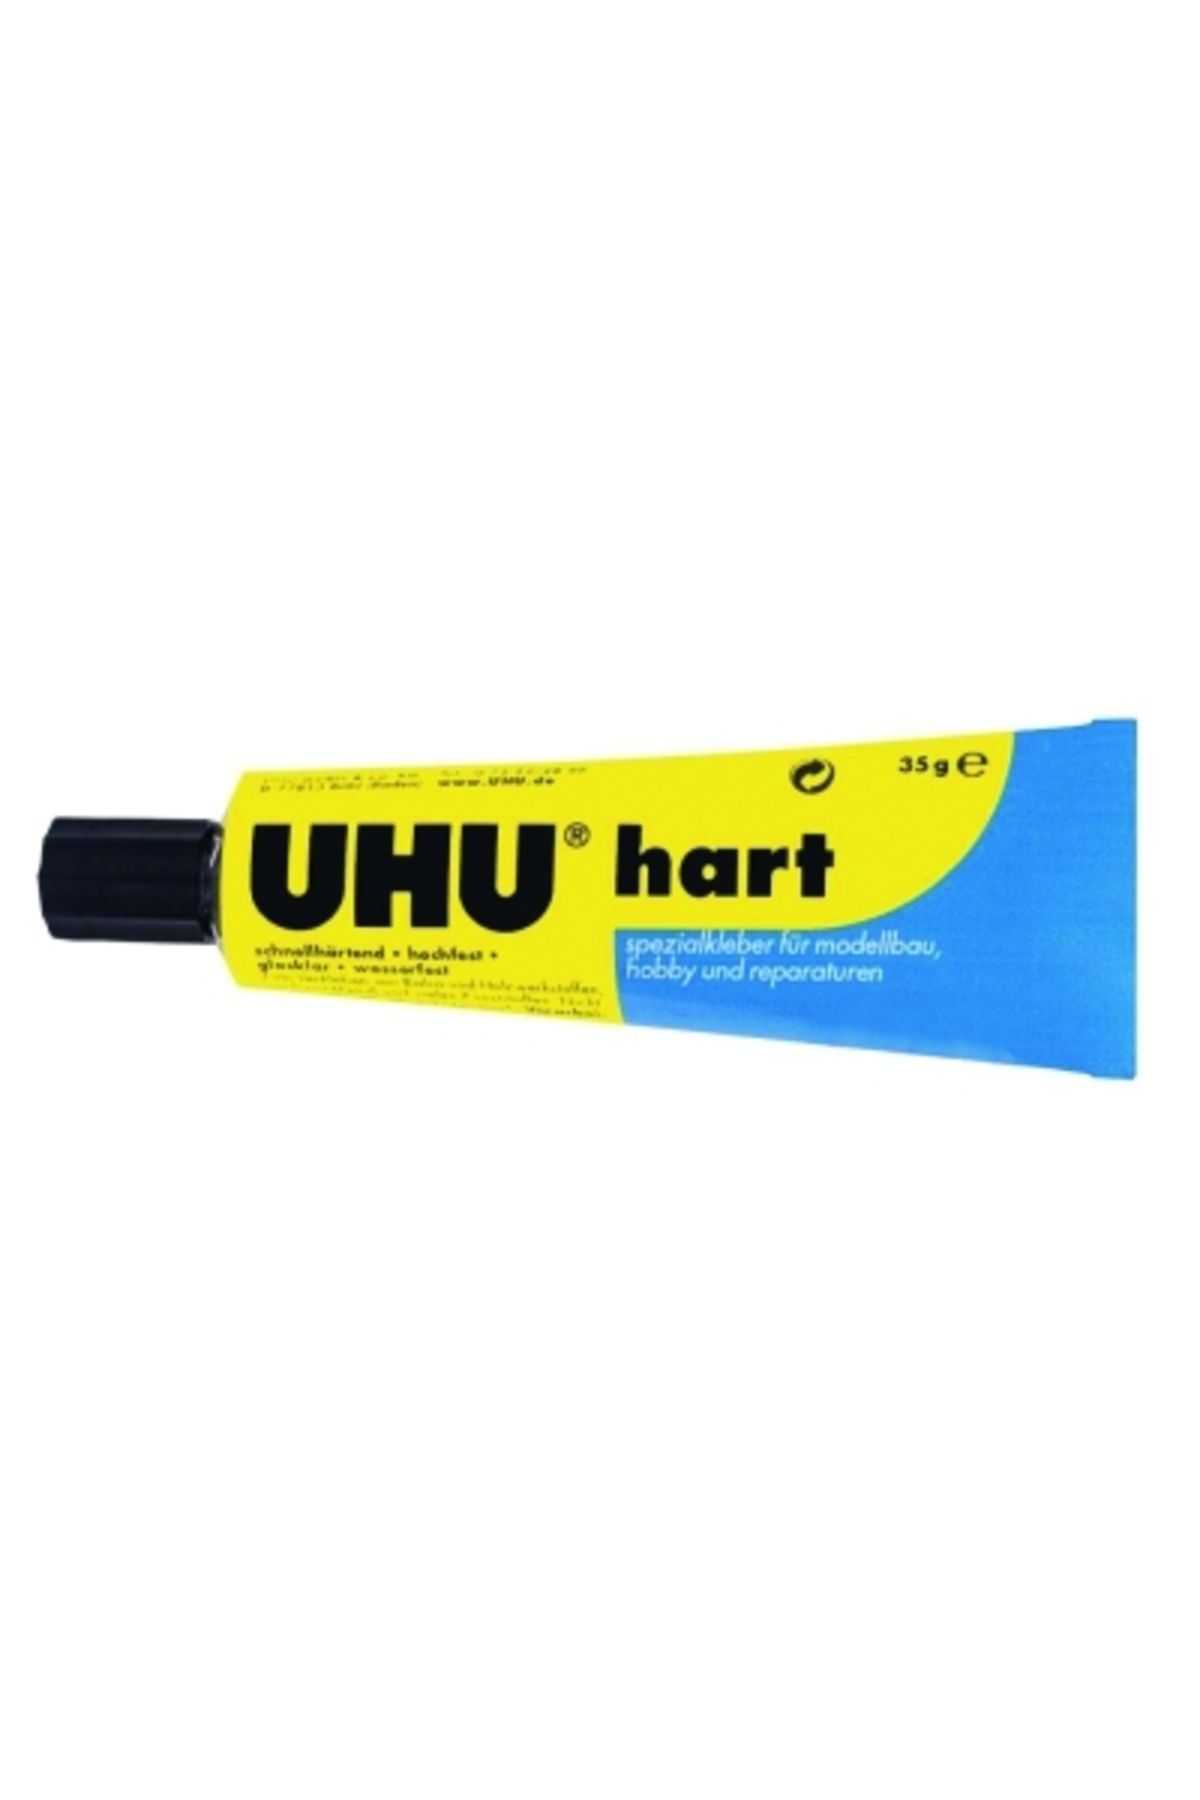 Uhu Hart Metal-ahşap-plastik Yapıştırıcı 40936